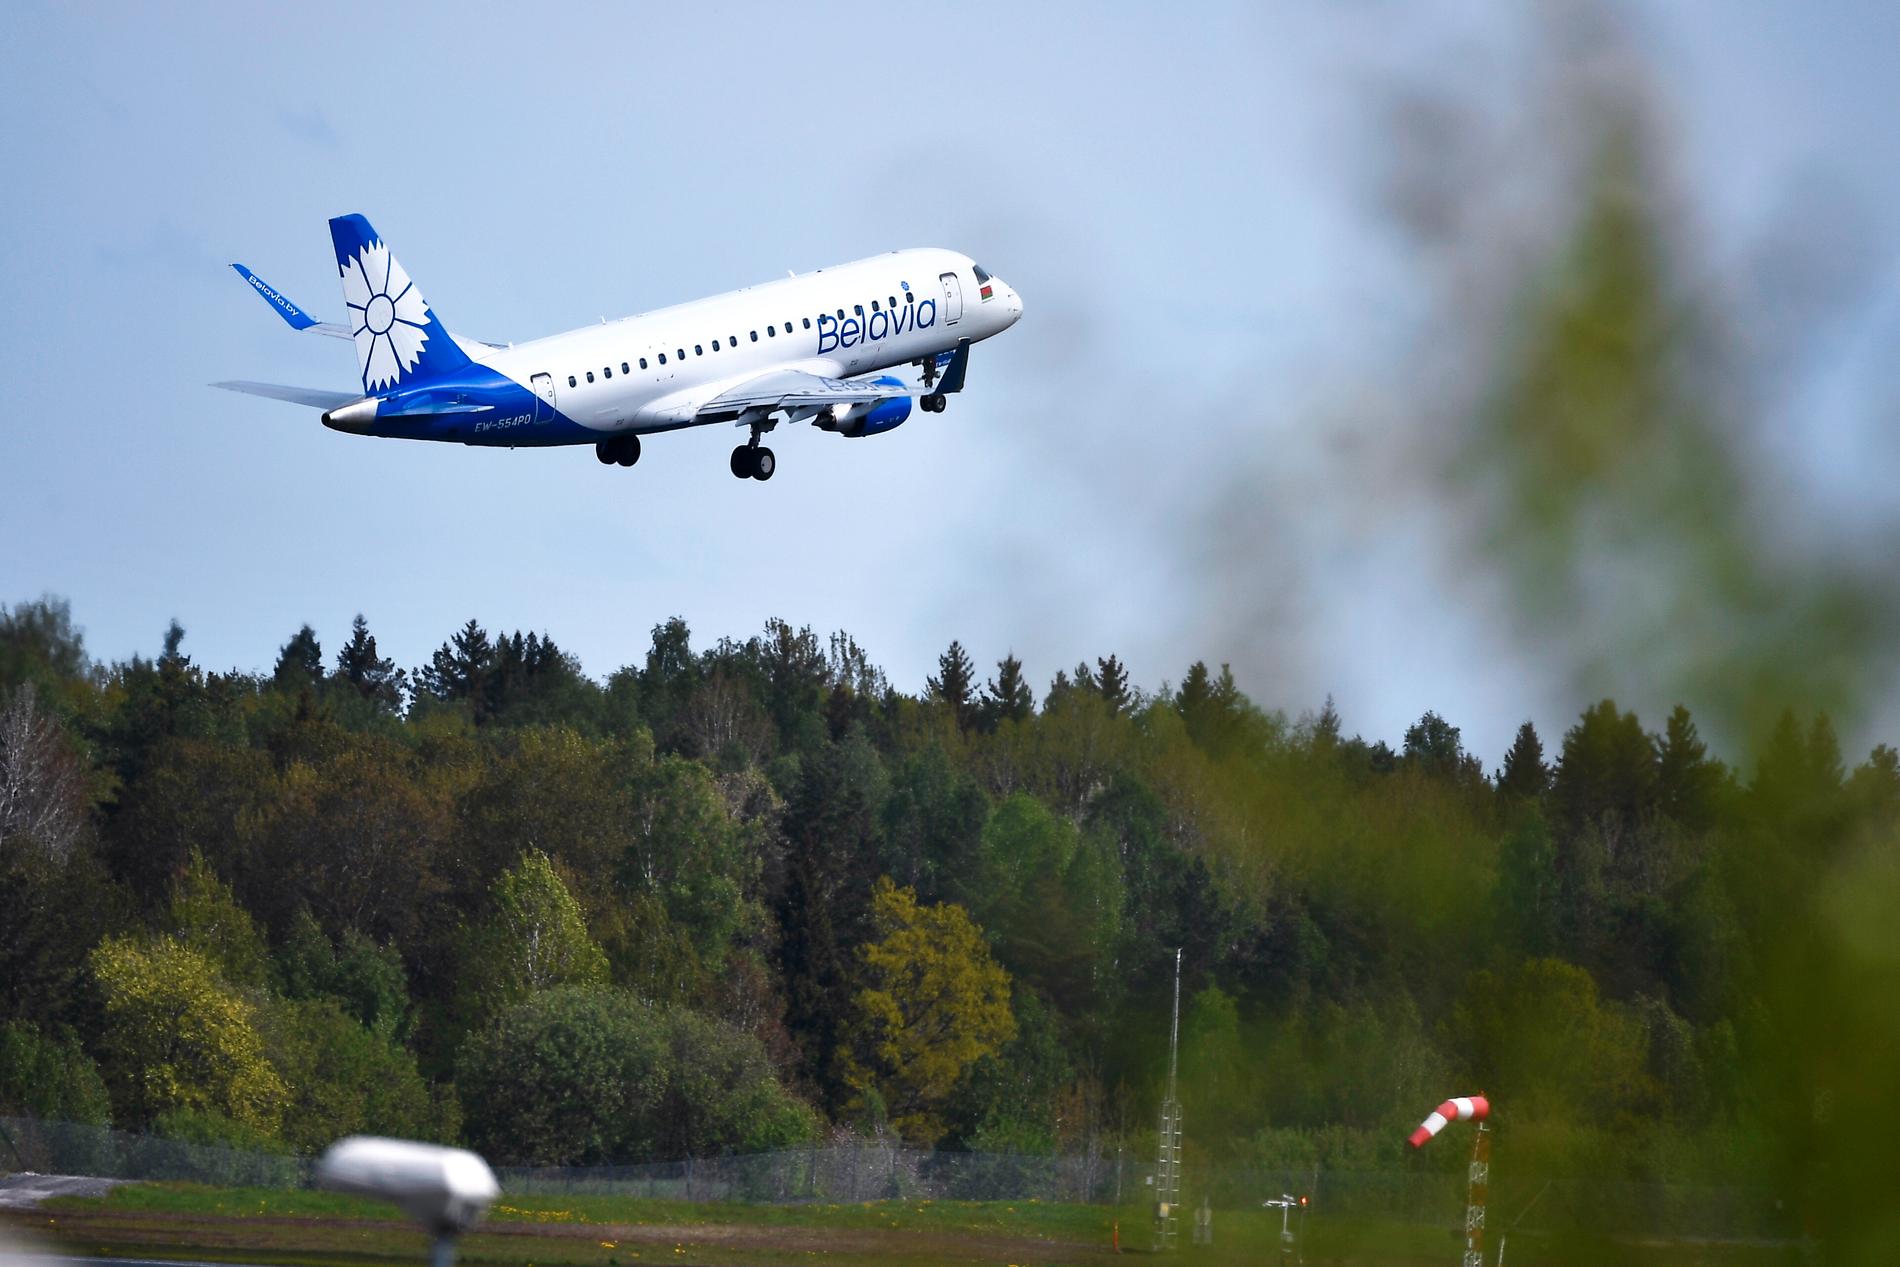 Trots EU-toppmötets uppmaning till medlemsländerna att inte släppa in belarusiska flygbolag har ett plan från Minsk landat och lyft från Arlanda.